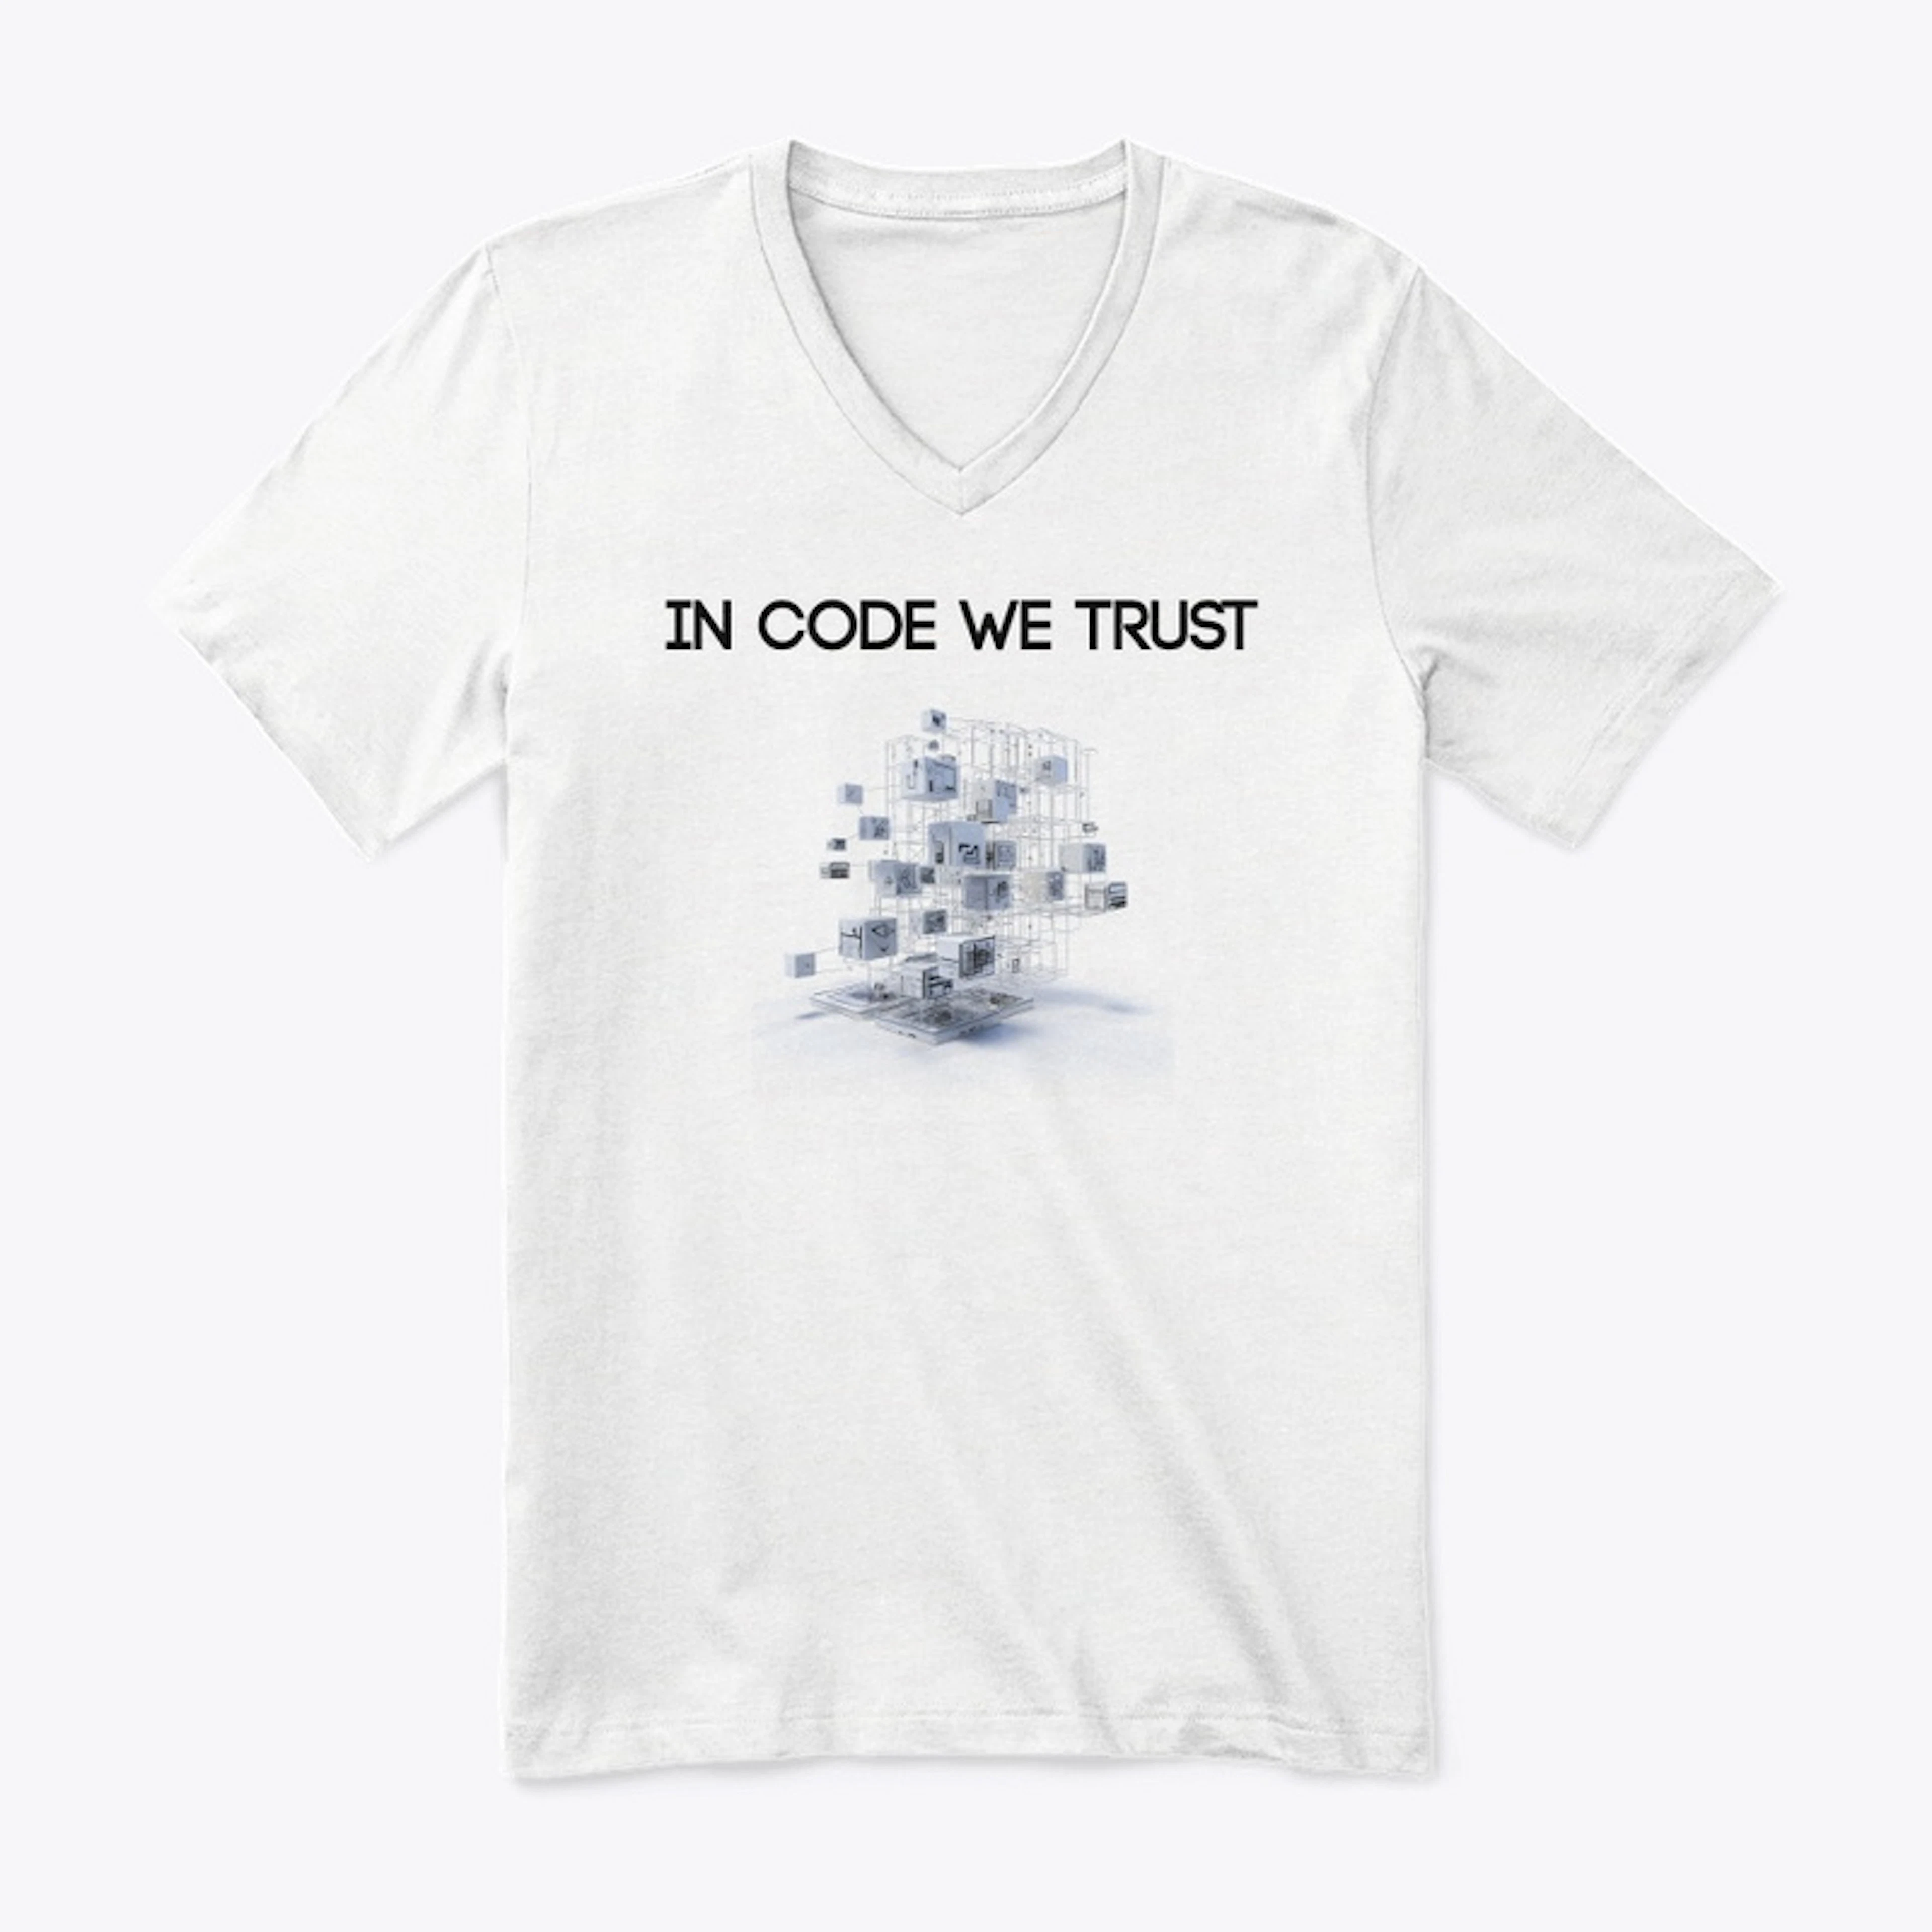 In Code We Trust